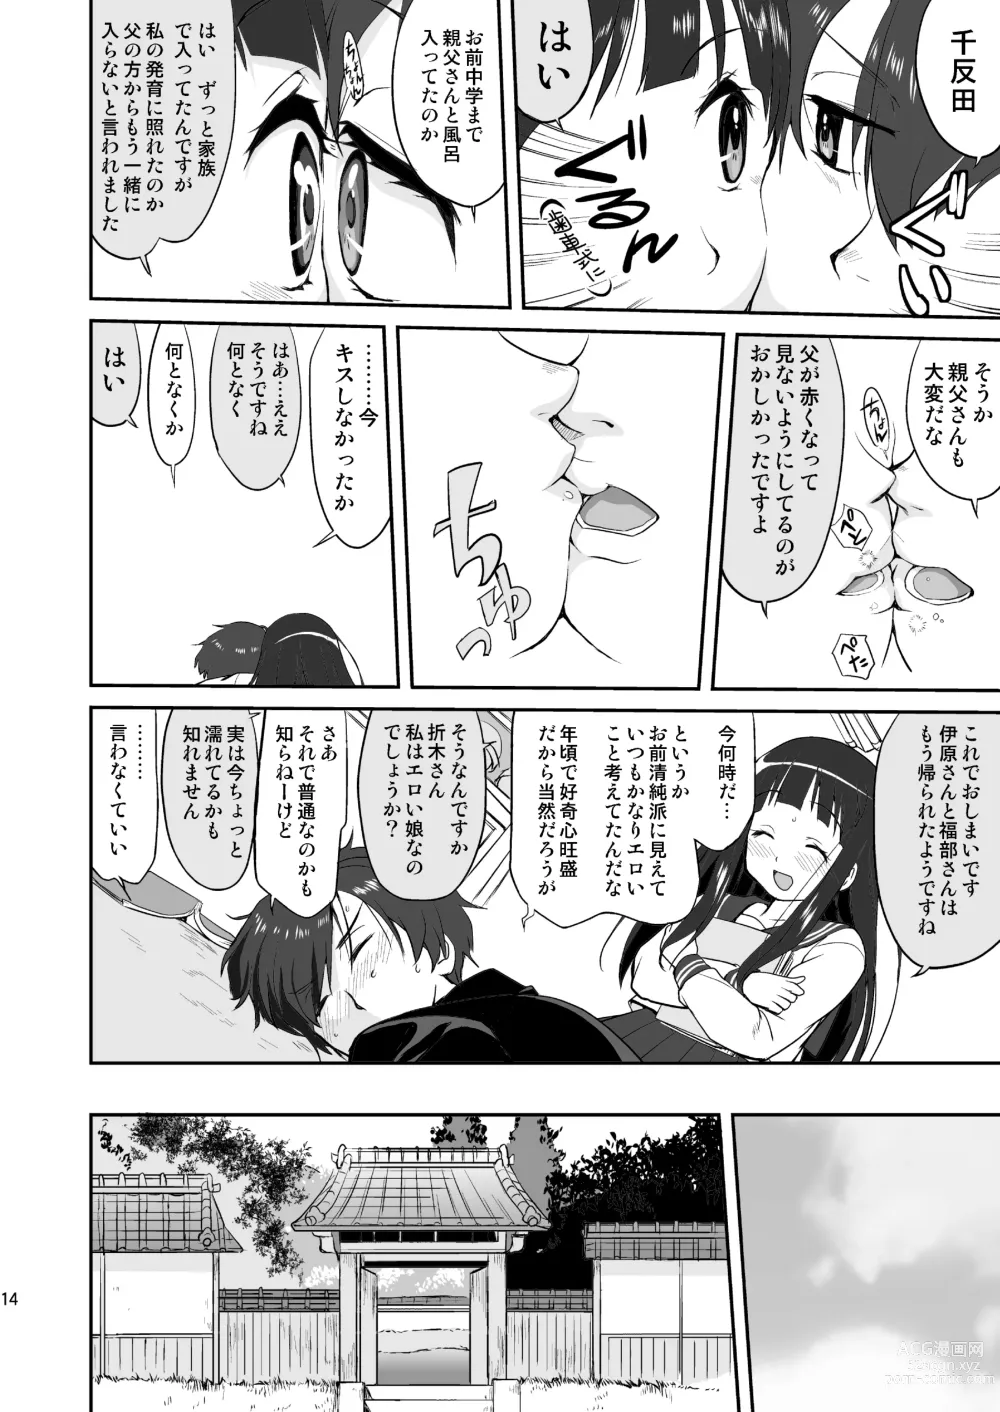 Page 14 of doujinshi Hikari no Ame